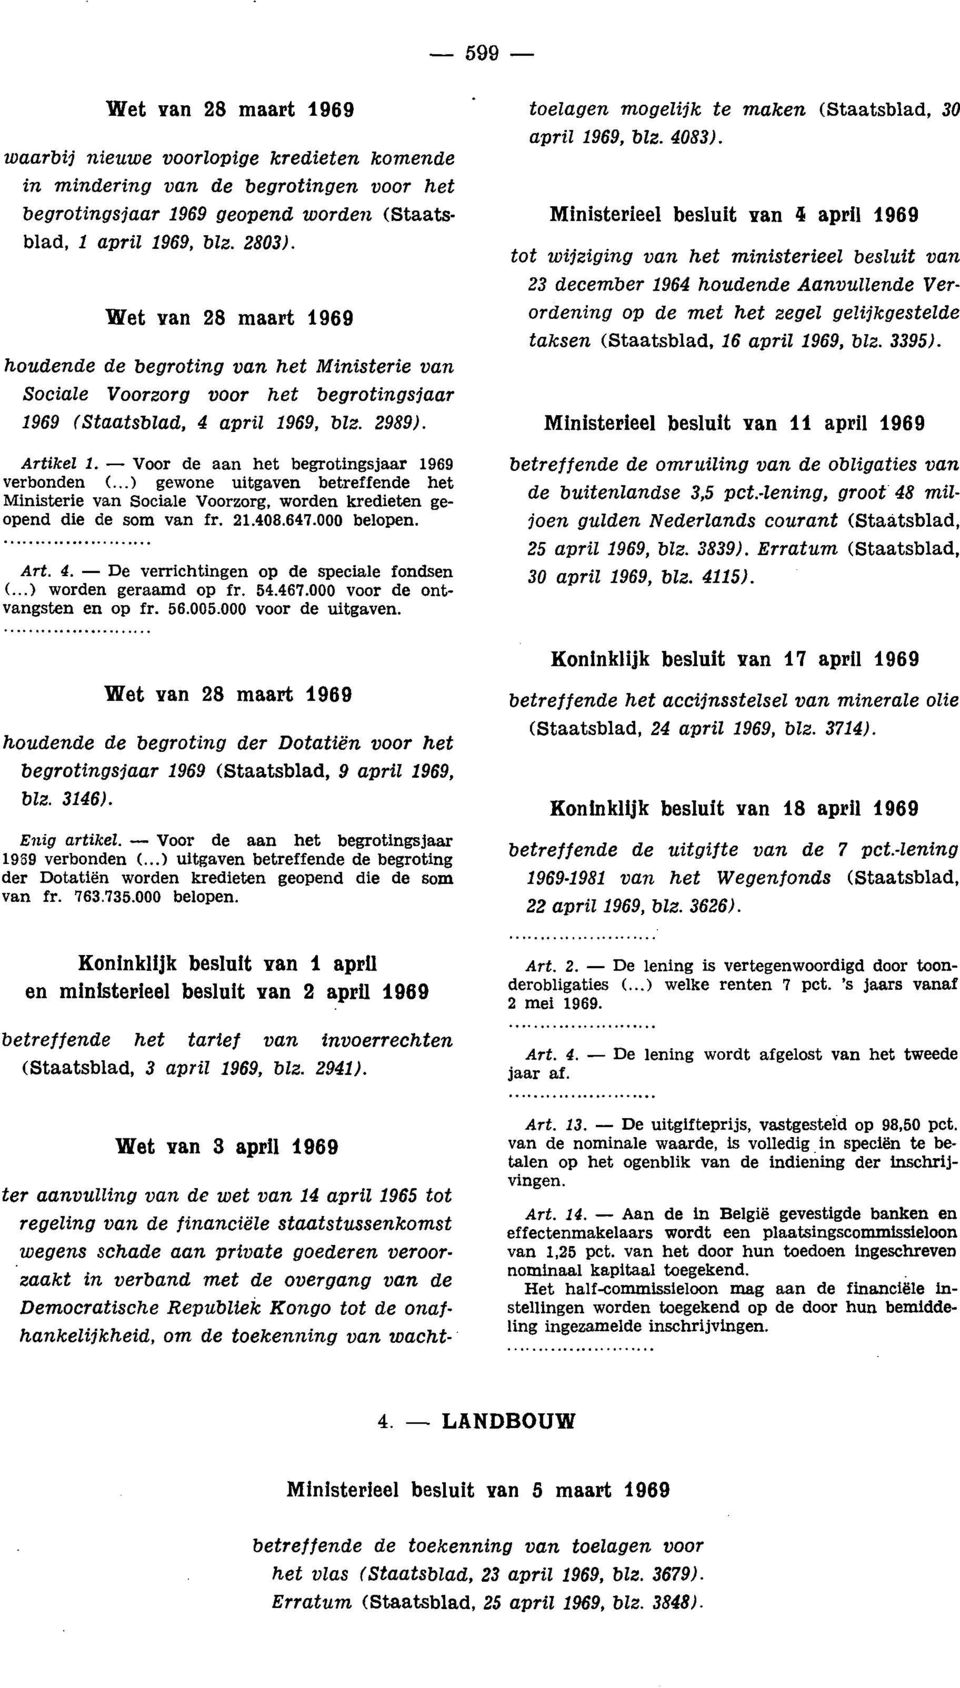 Wet van 28 maart 1969 houdende de begroting van het Ministerie van Sociale Voorzorg voor het begrotingsjaar 1969 (Staatsblad, 4 april 1969, blz. 2989).